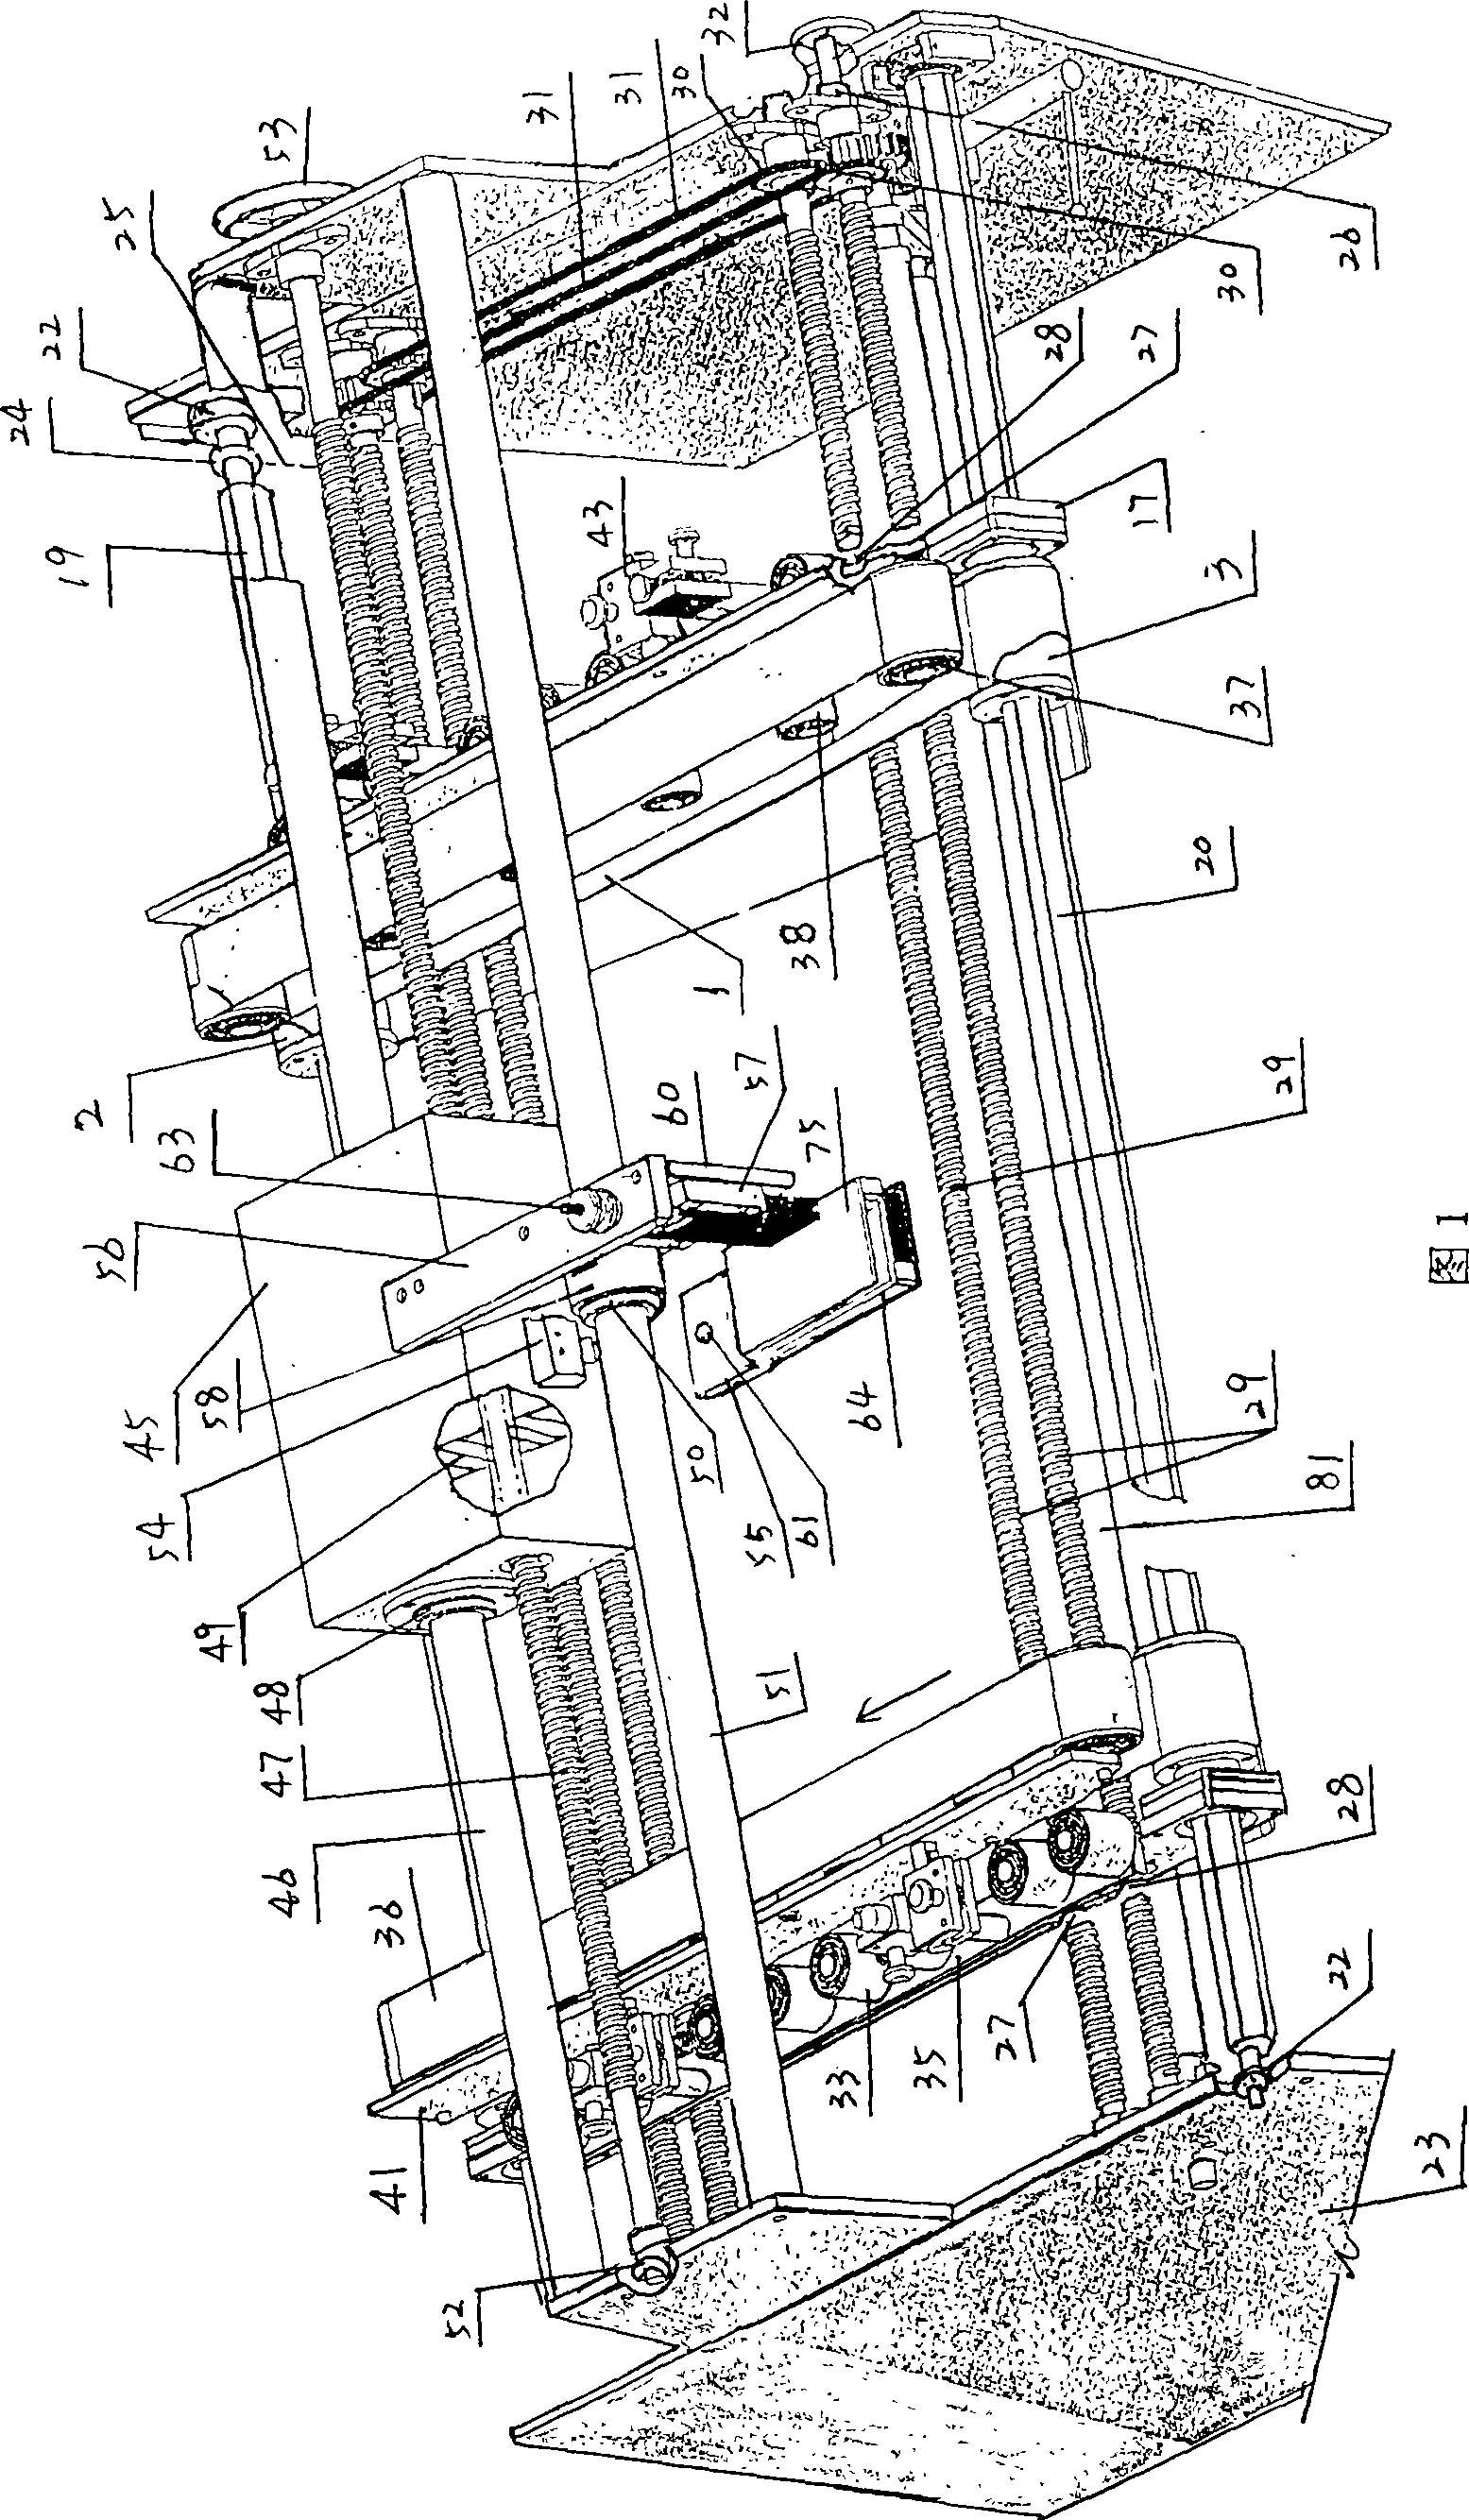 Nailing machine of corrugated case